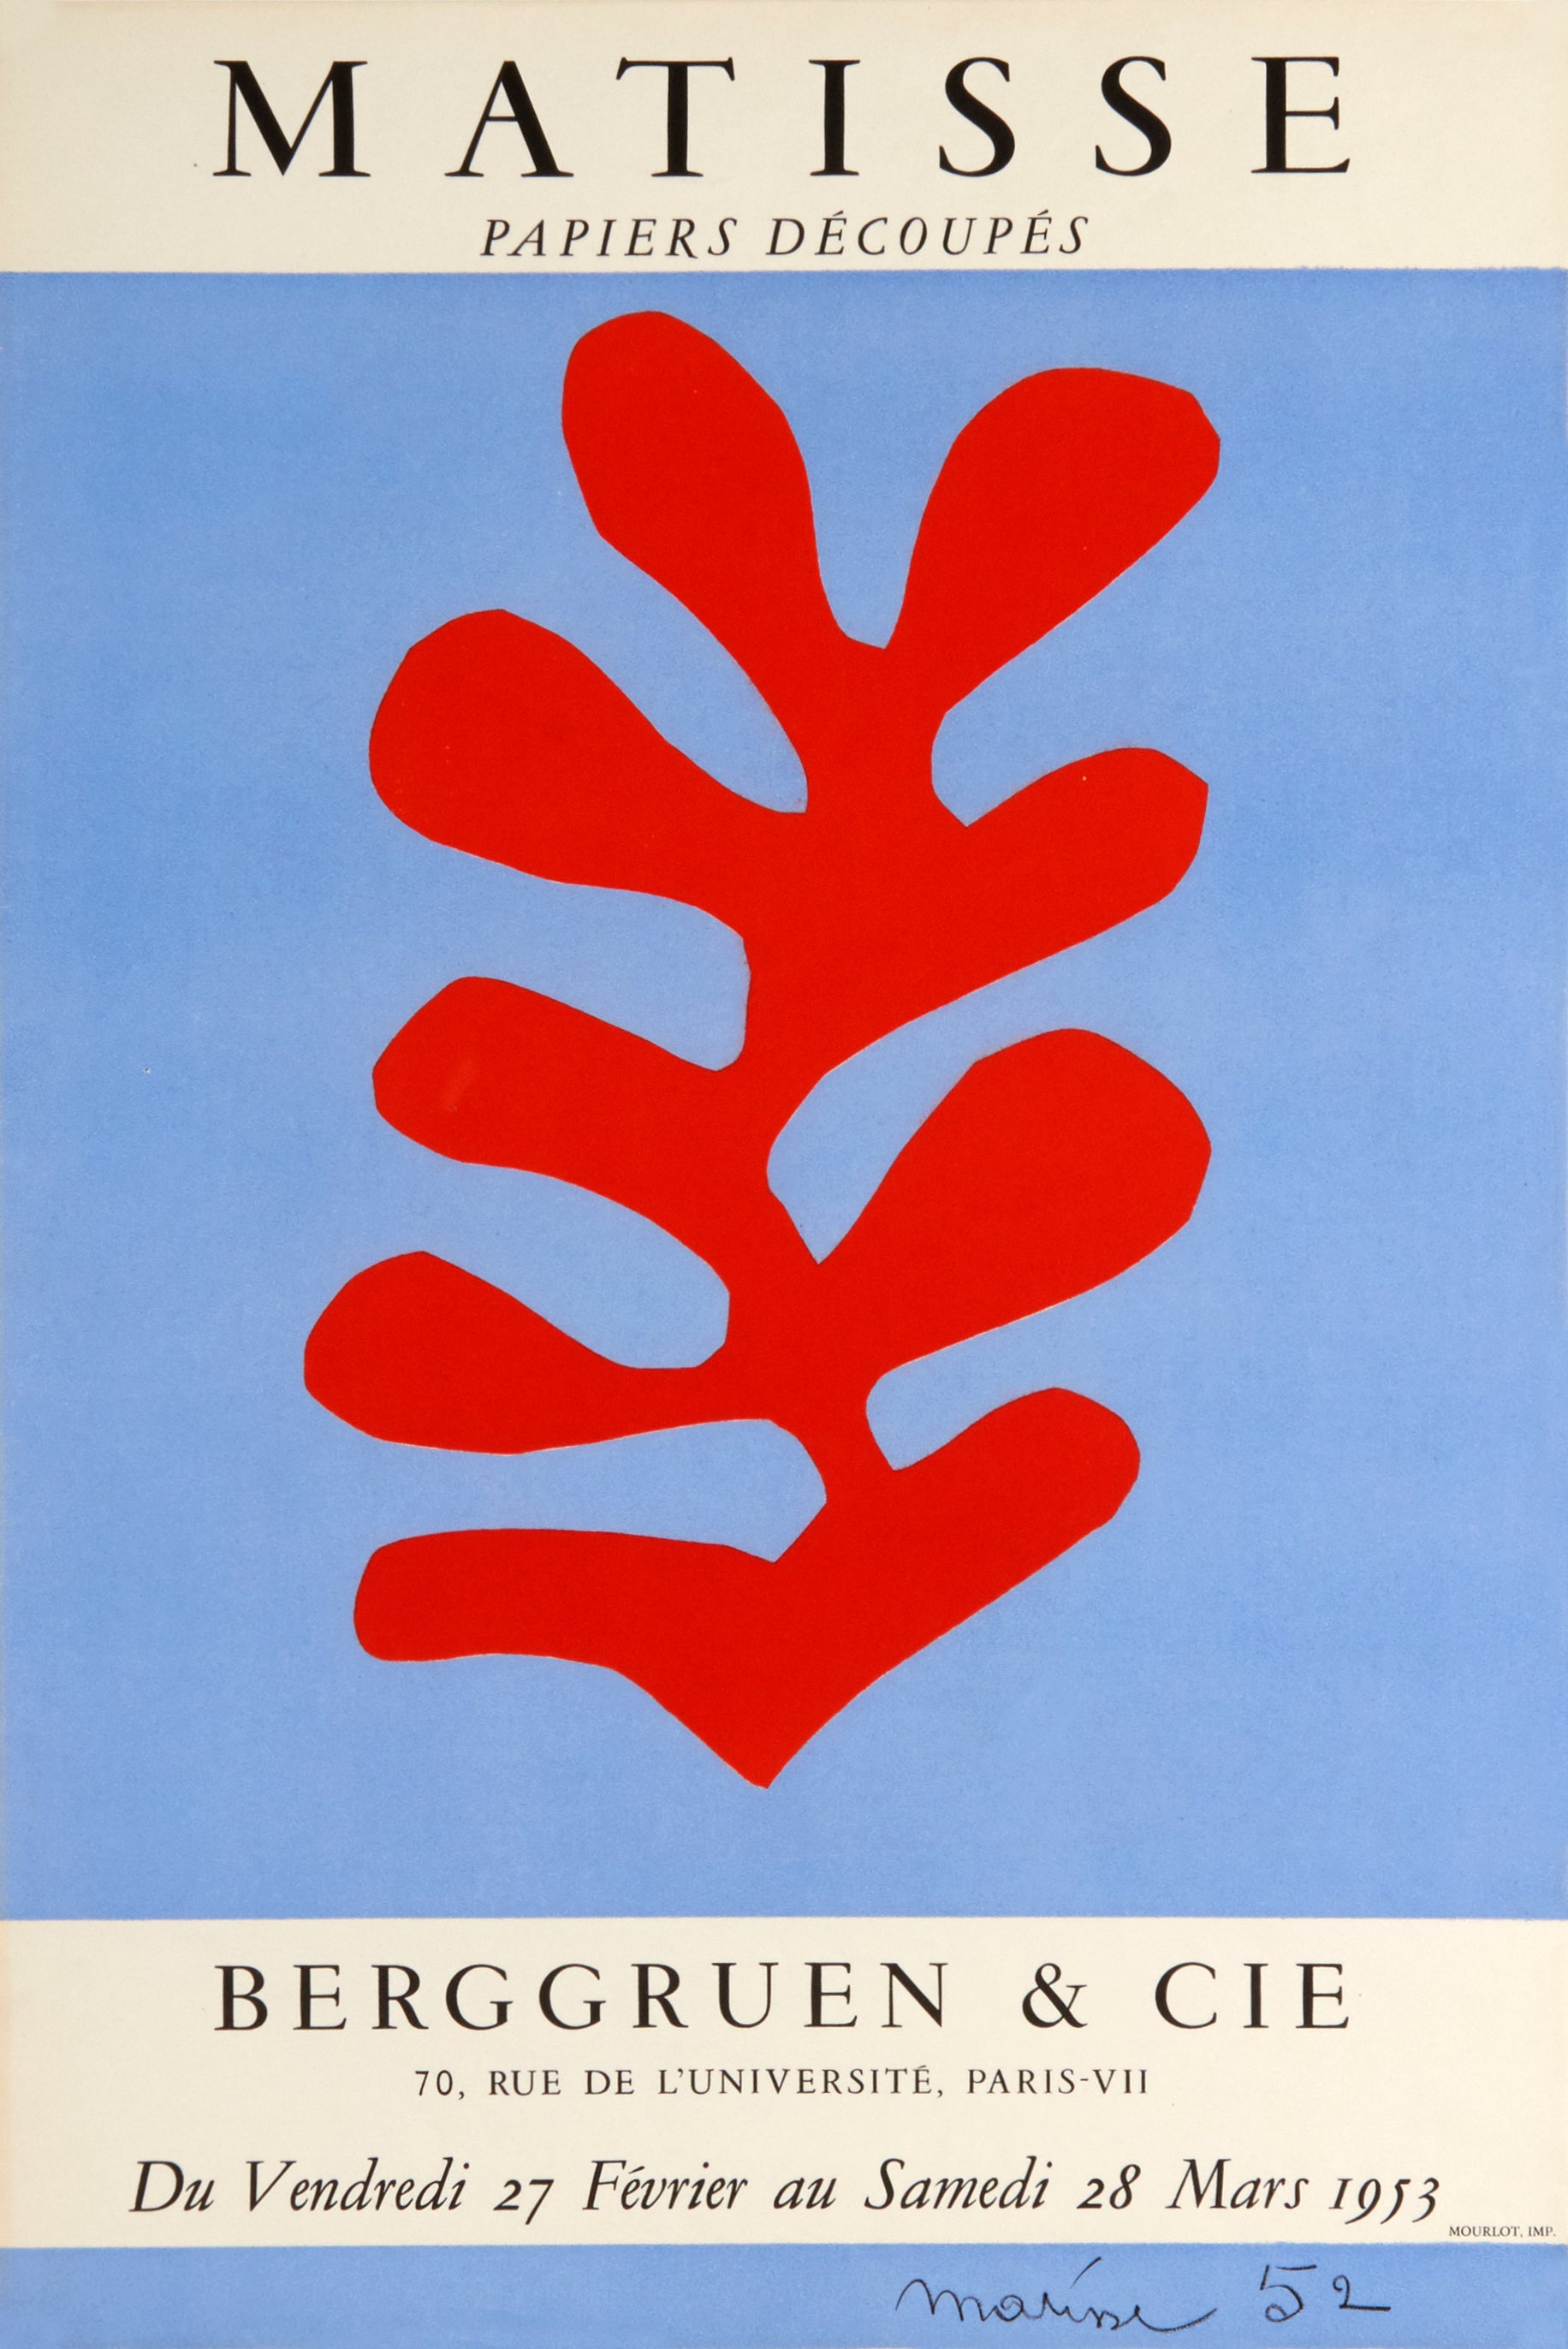 Papiers Decoupes, Berggruen & Co. Gallery Paris by Henri Matisse - Mourlot Editions - Fine_Art - Poster - Lithograph - Wall Art - Vintage - Prints - Original